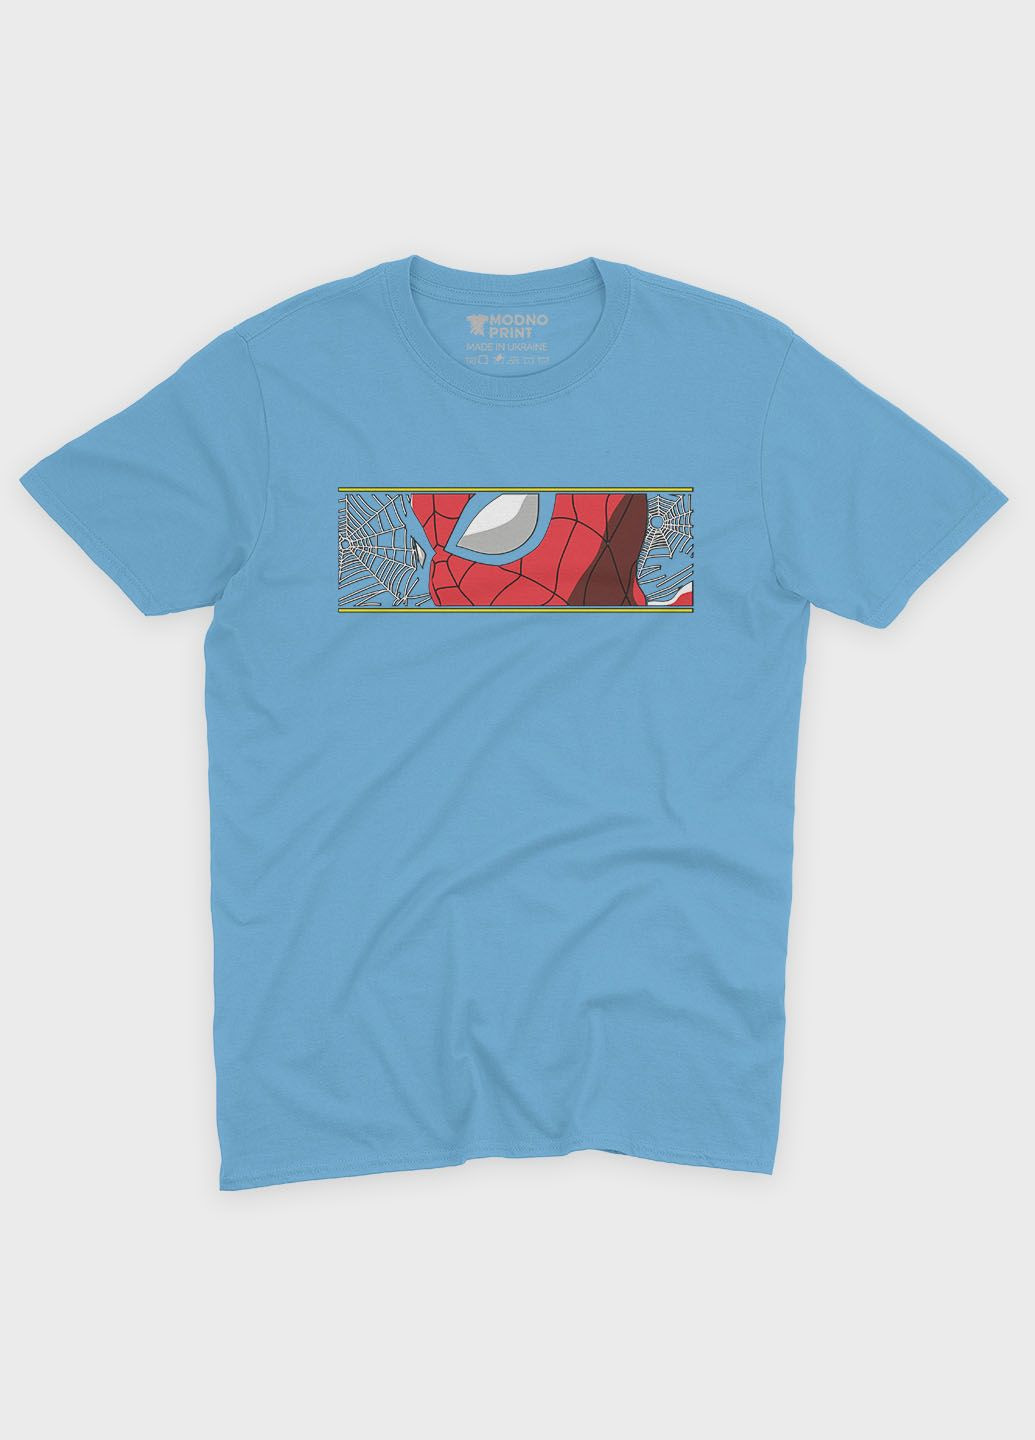 Голубая демисезонная футболка для мальчика с принтом супергероя - человек-паук (ts001-1-lbl-006-014-008-b) Modno